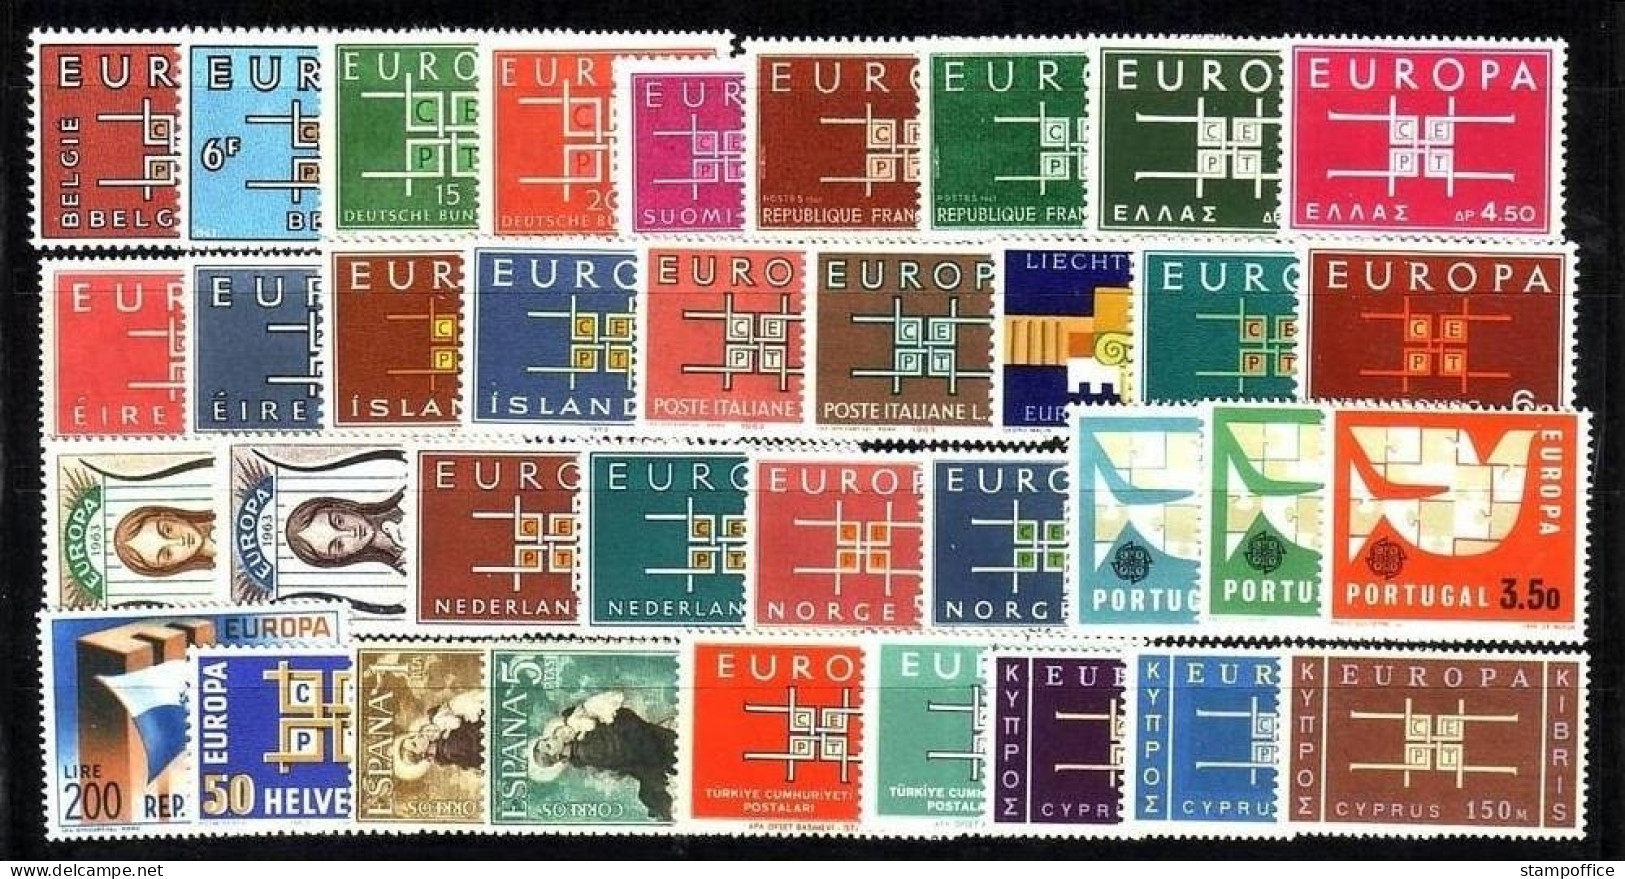 EUROPA CEPT JAHRGANG 1963 POSTFRISCH(MINT) 36 WERTE MIT ZYPERN - 1963